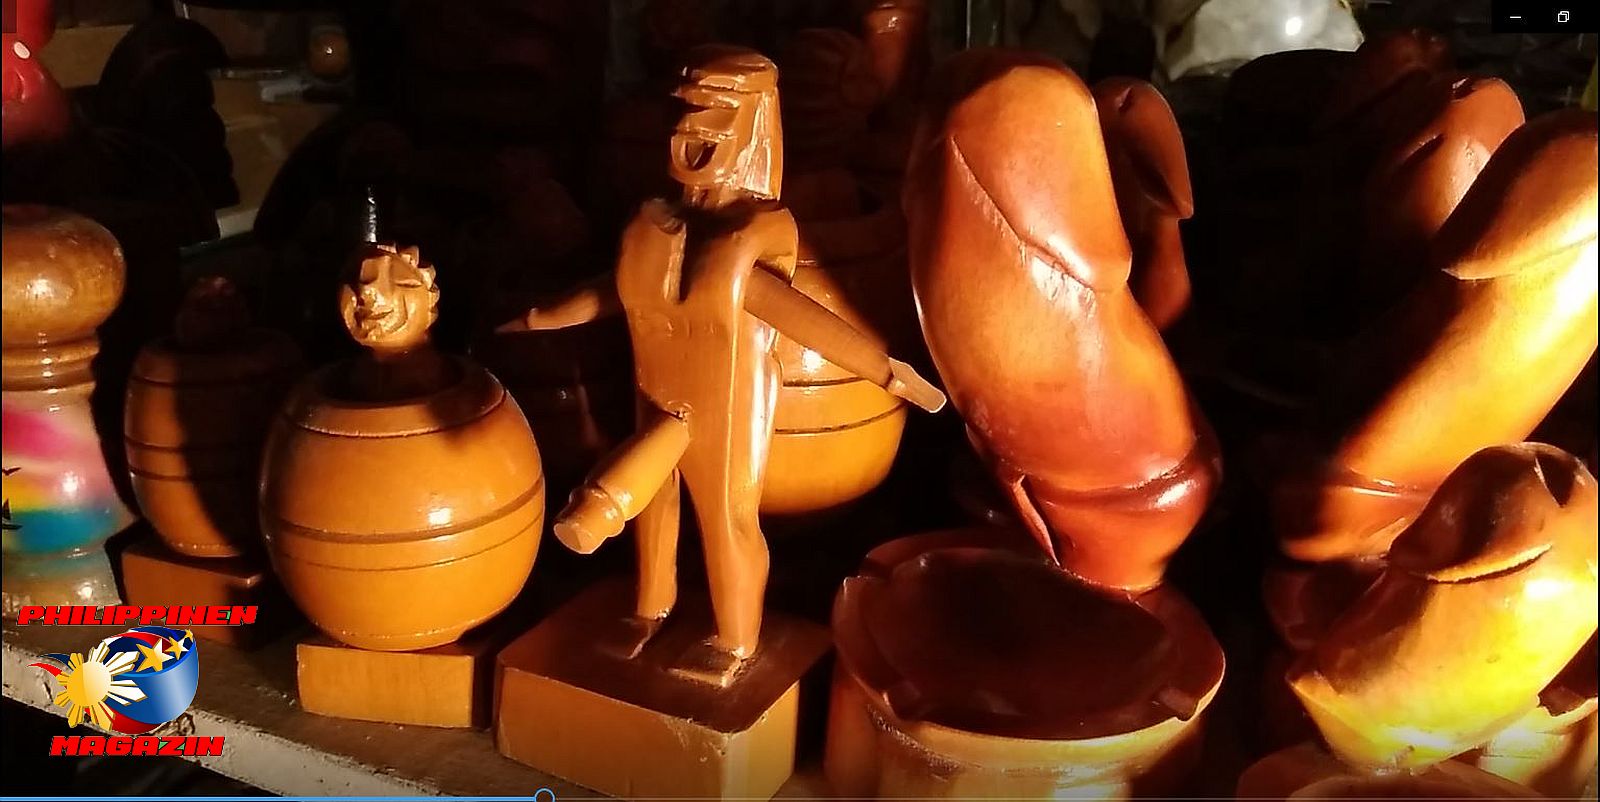 SIGHTS OF CAGAYAN DE ORO CITY & NOTHERN MINDANAO - Barrel Man, Barrel Woman and Phallus-Aschtray at ORO BOHOL TRADING